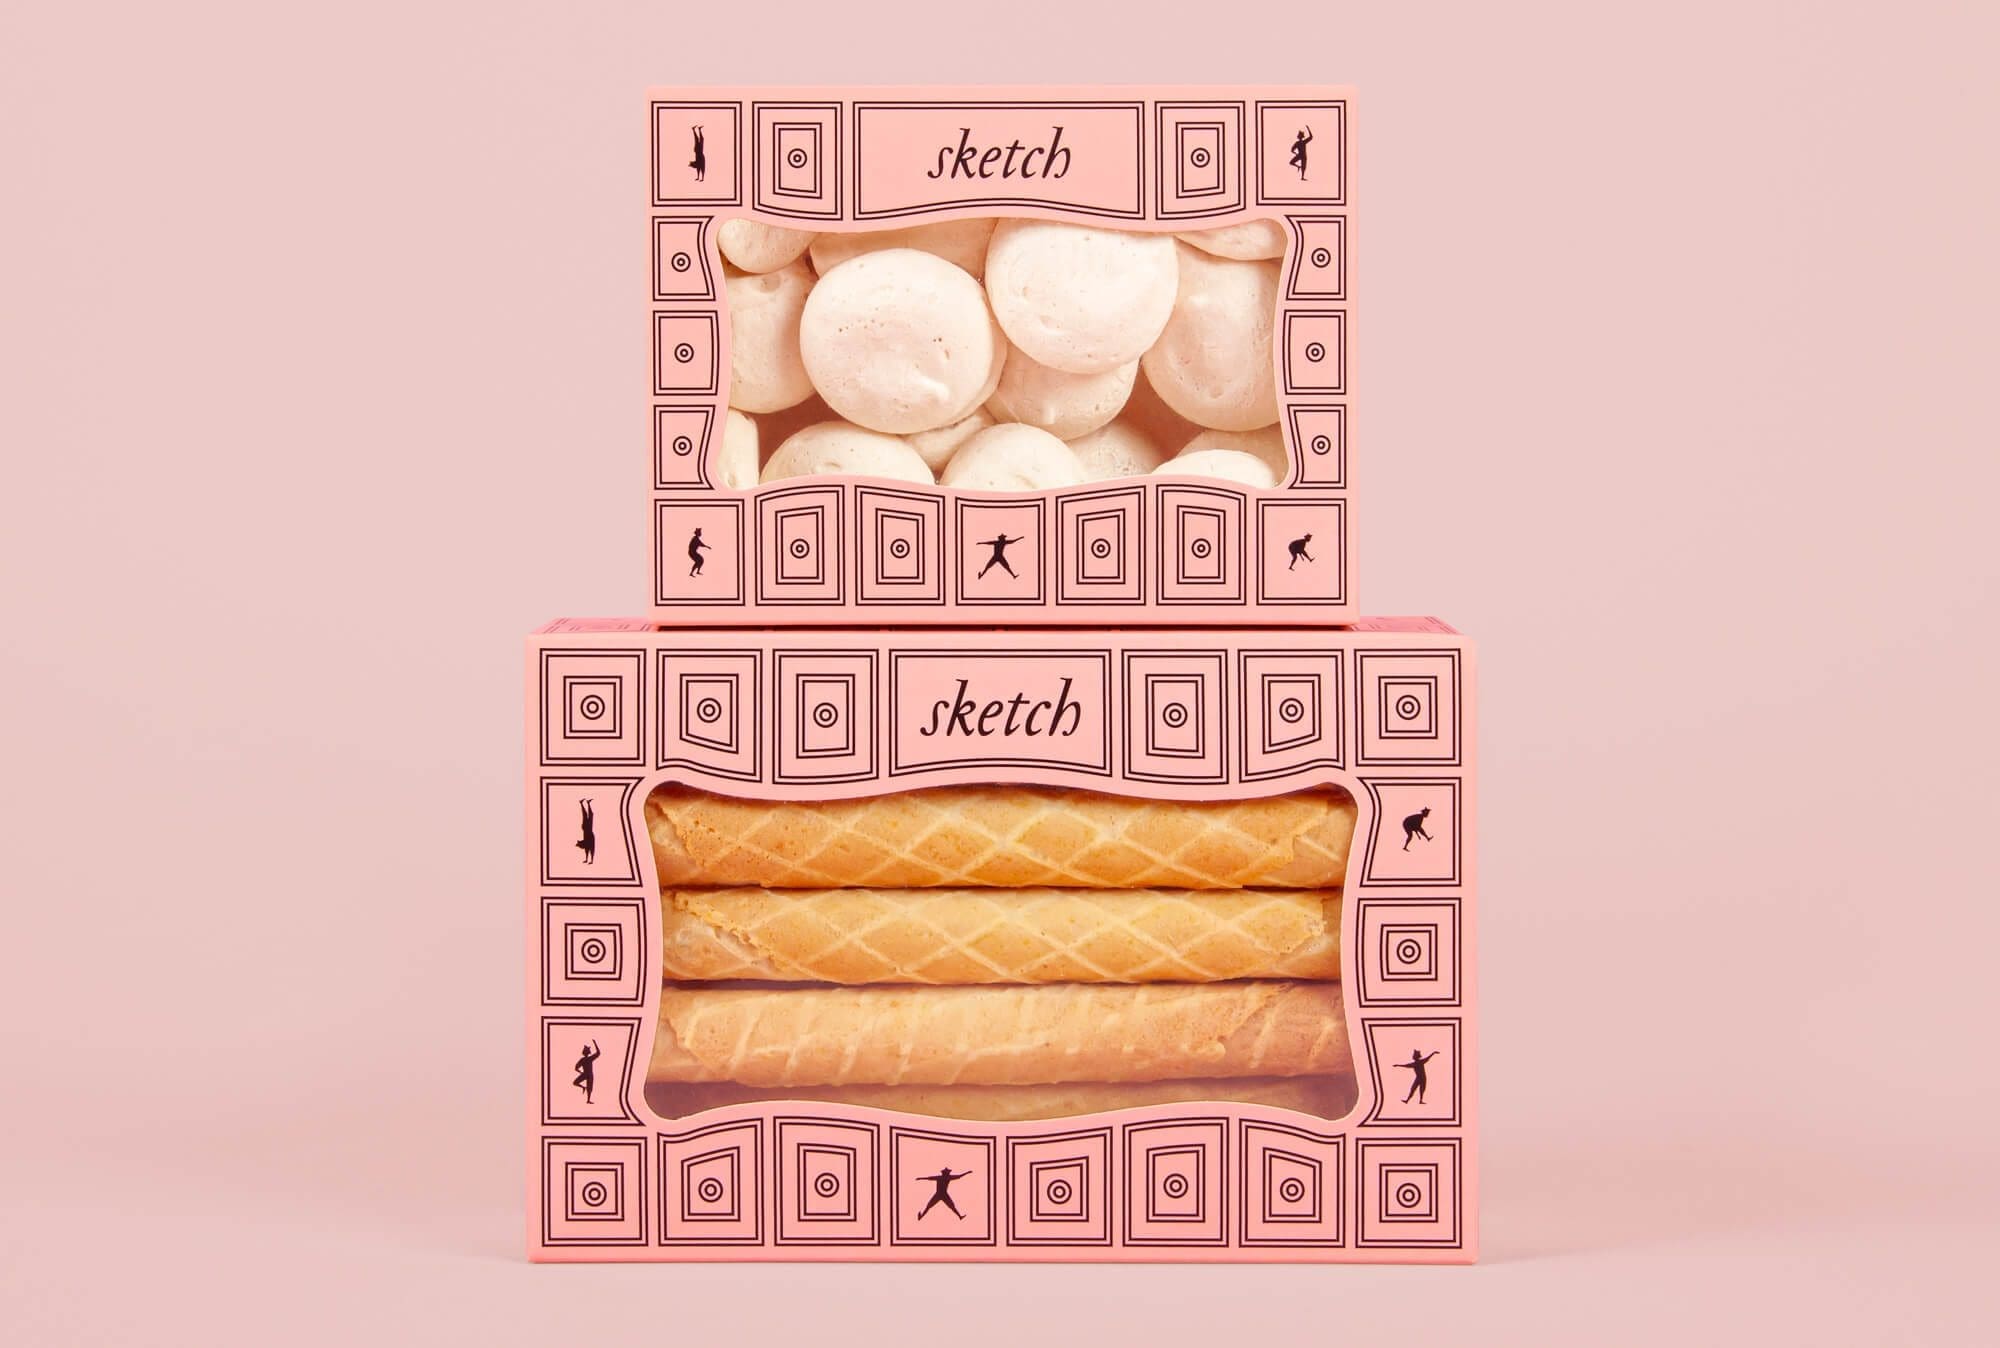 Les boites biscuits de l'identité de marque du sketch restaurant de Londres, graphisme IchetKar